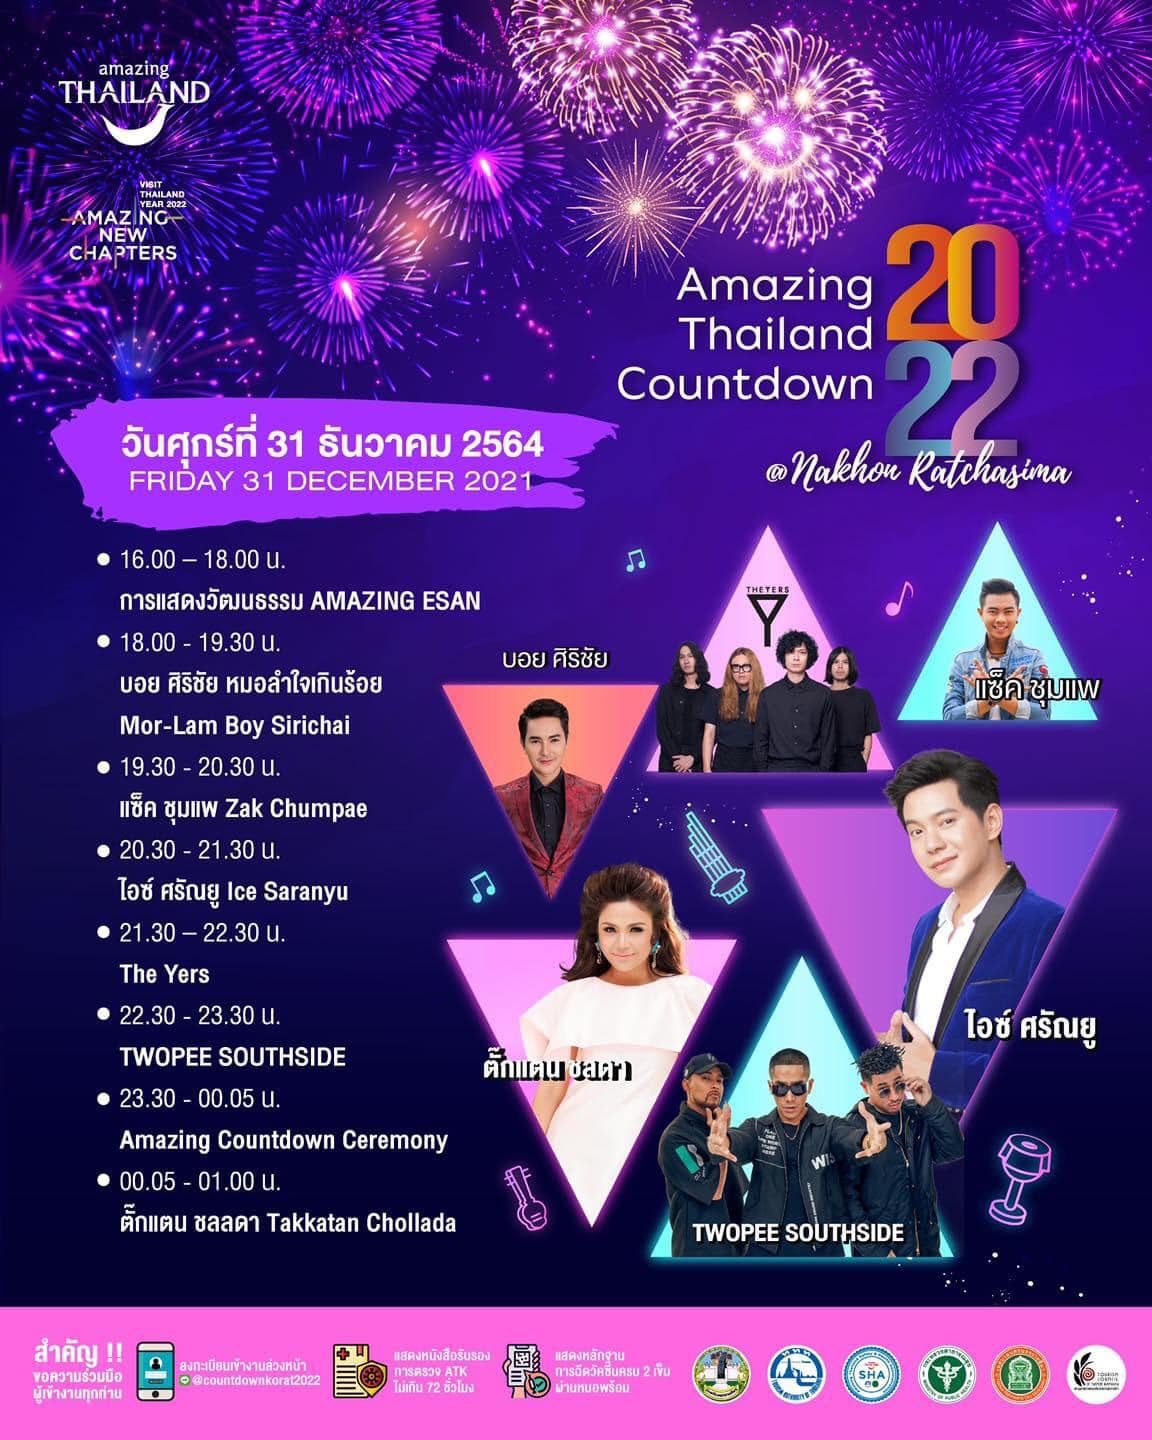 Amazing Thailand Countdown 2022 - Amazing New Chapter @Nakhon Ratchasima